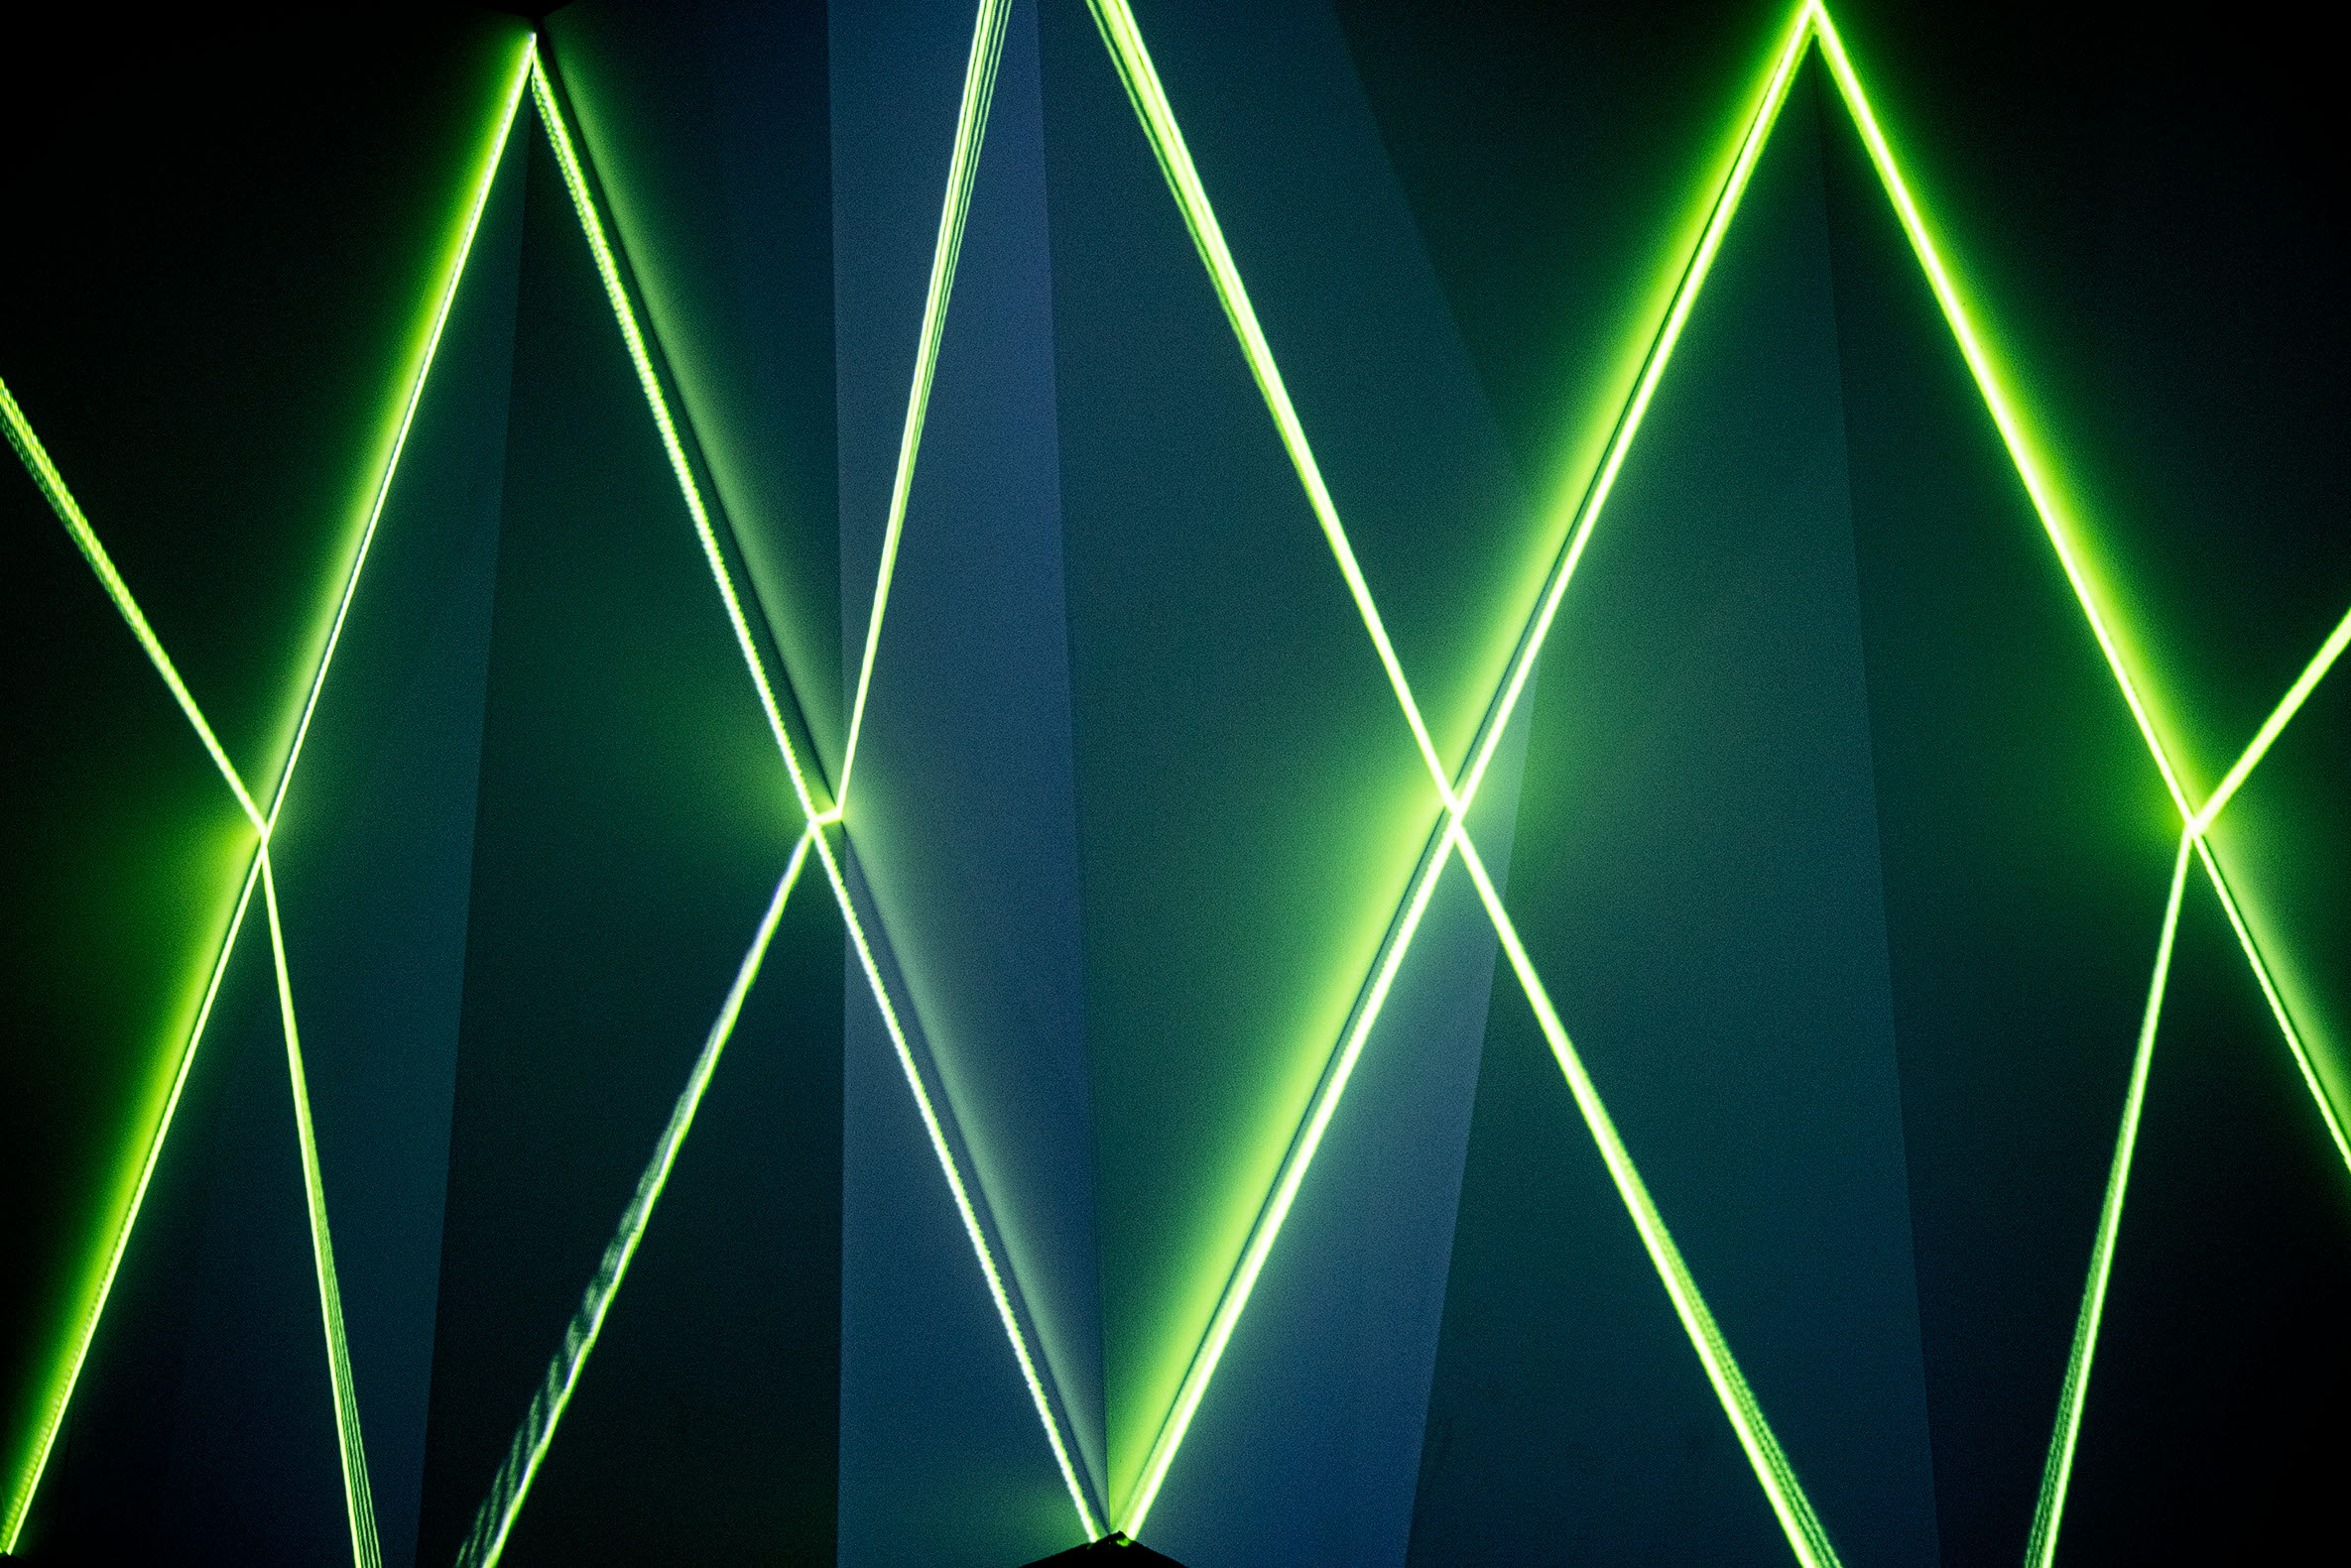 Gröna laserstrålar mot mörk bakgrund